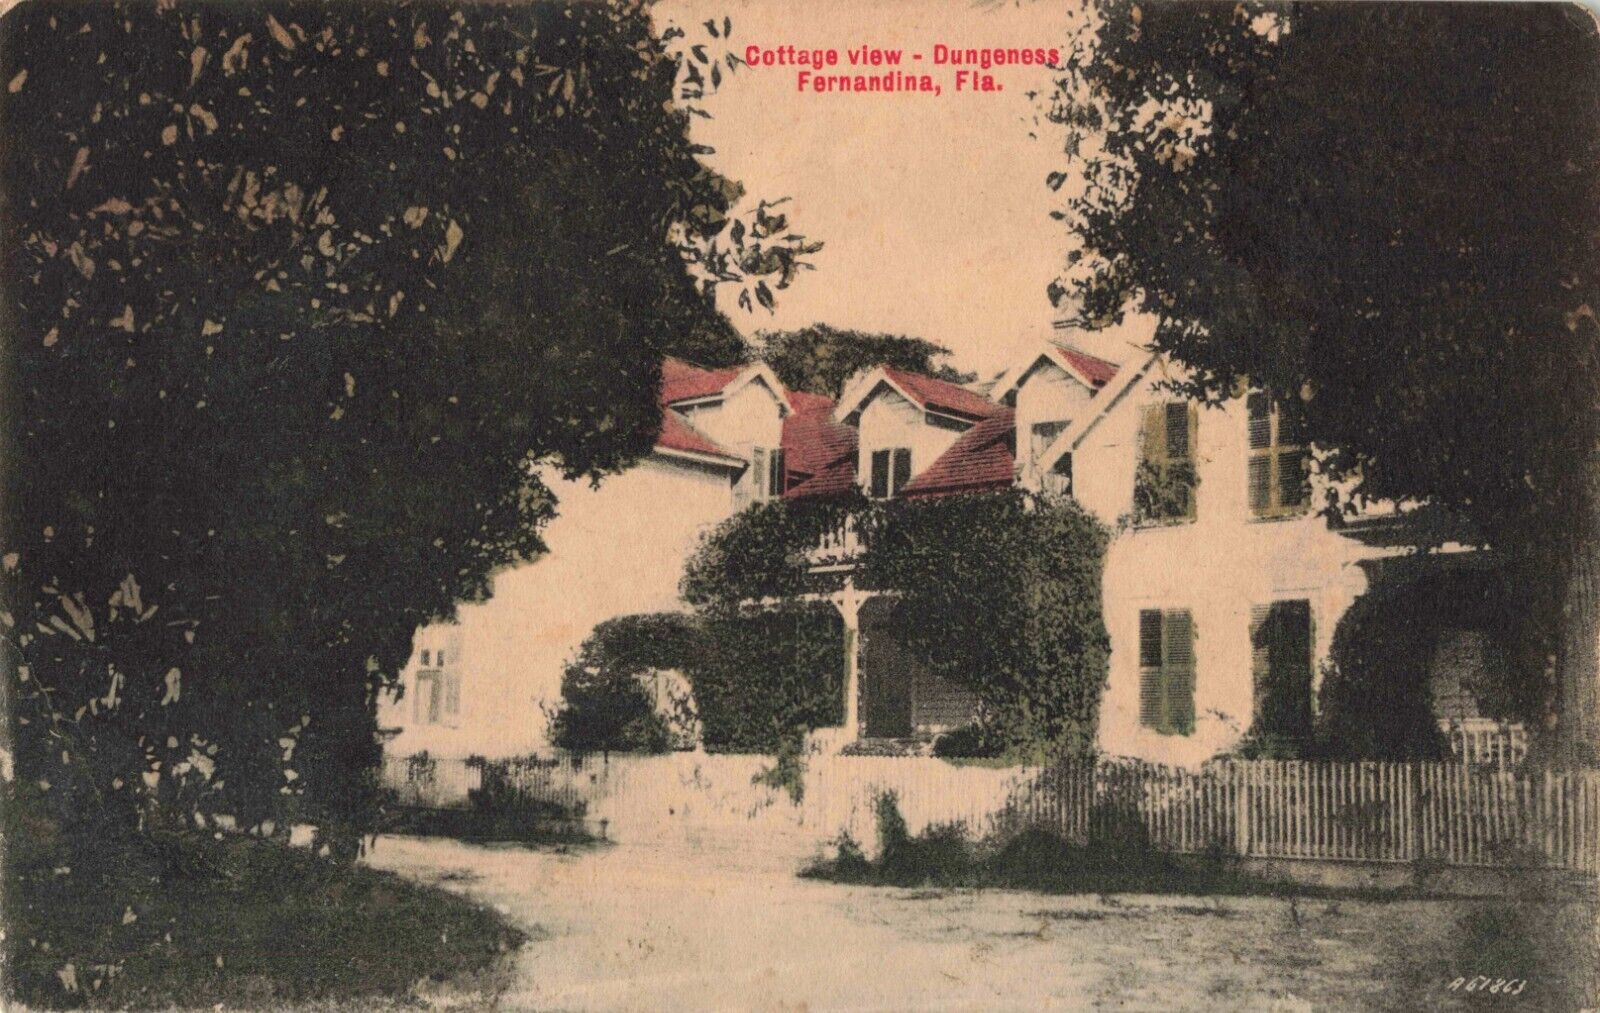 Cottage View Dungeness Fernandina Florida FL 1910 Postcard